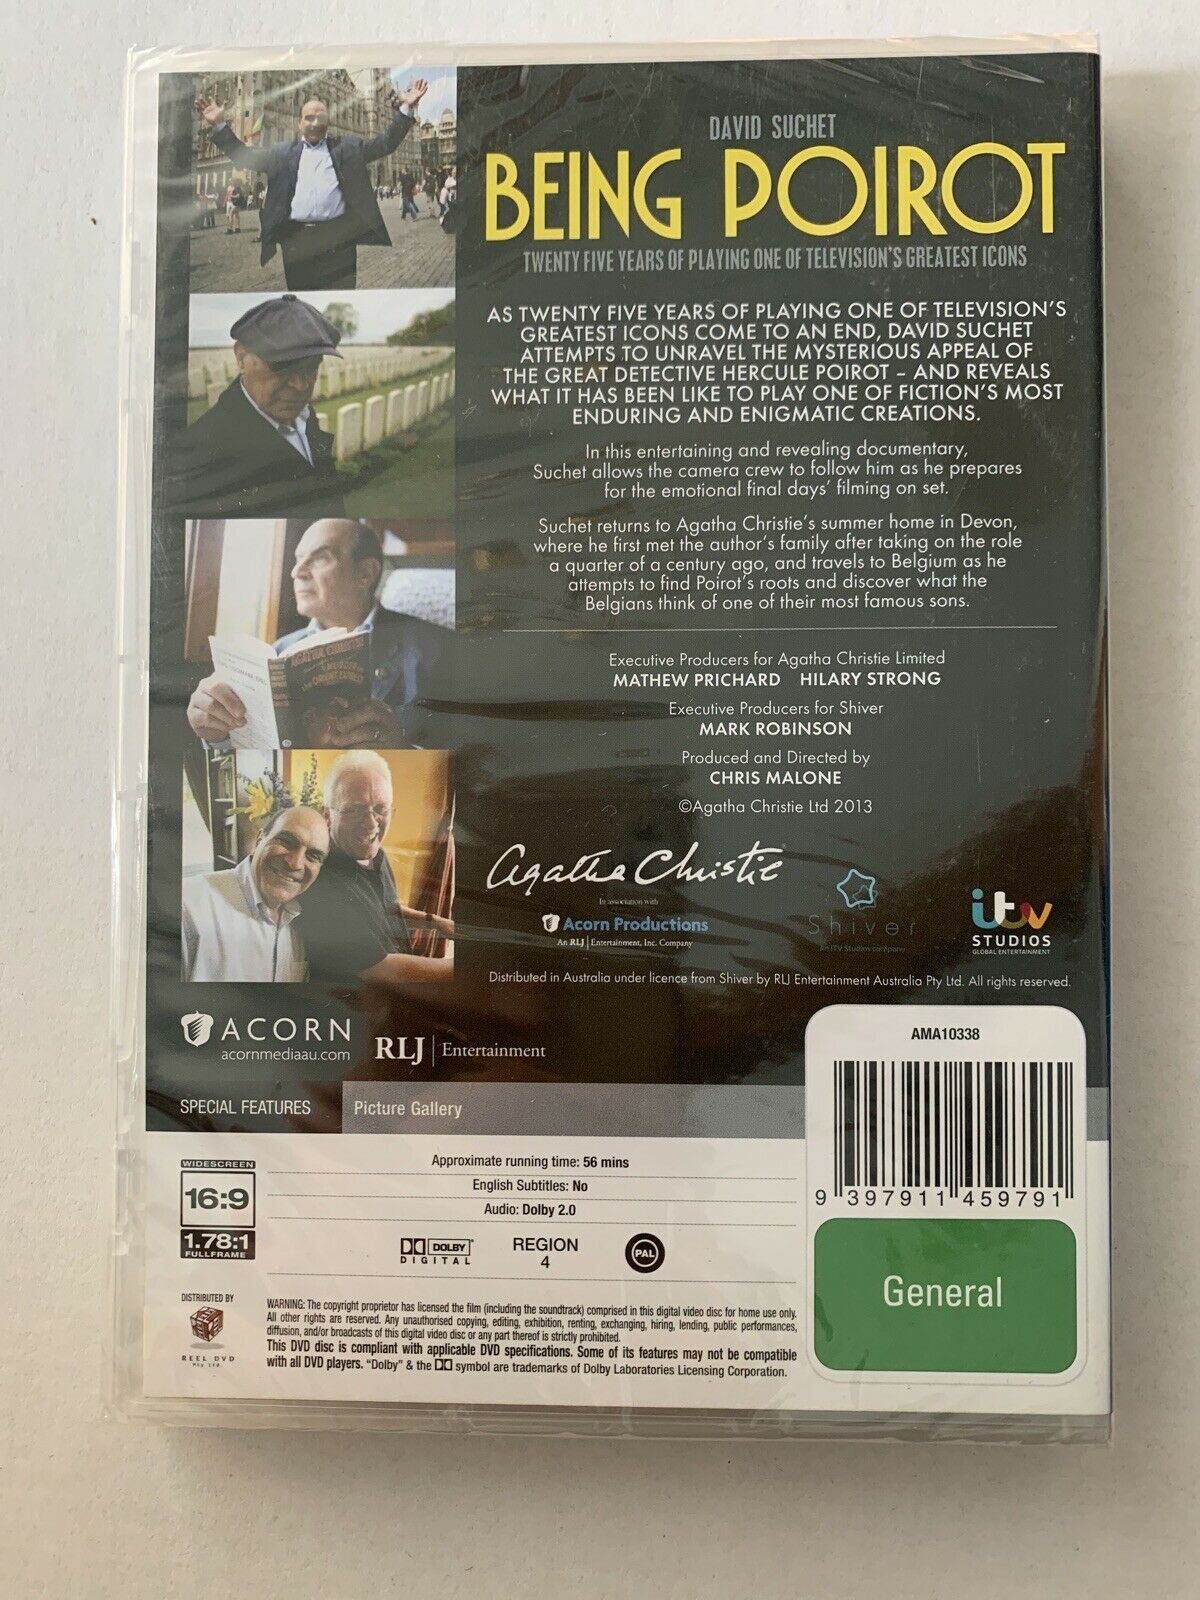 *New Sealed* Being Poirot (DVD, 2014) David Suchet. Region 4